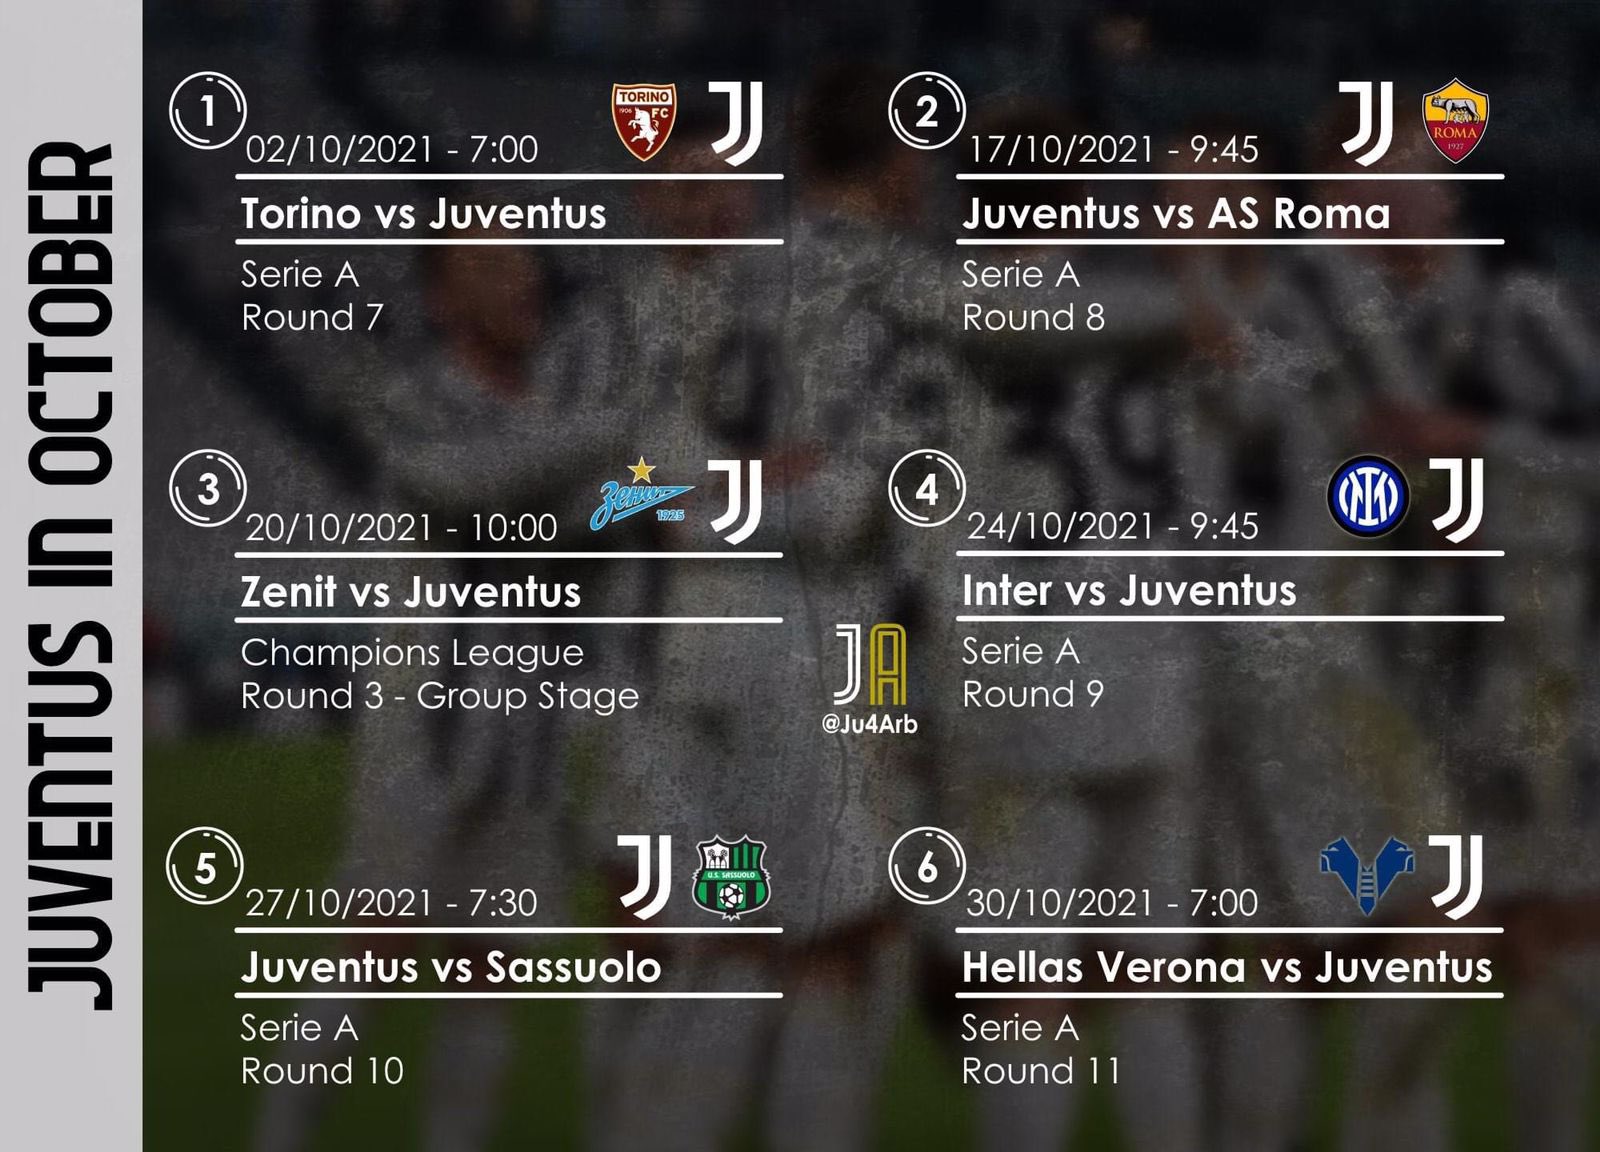 Juventus matches